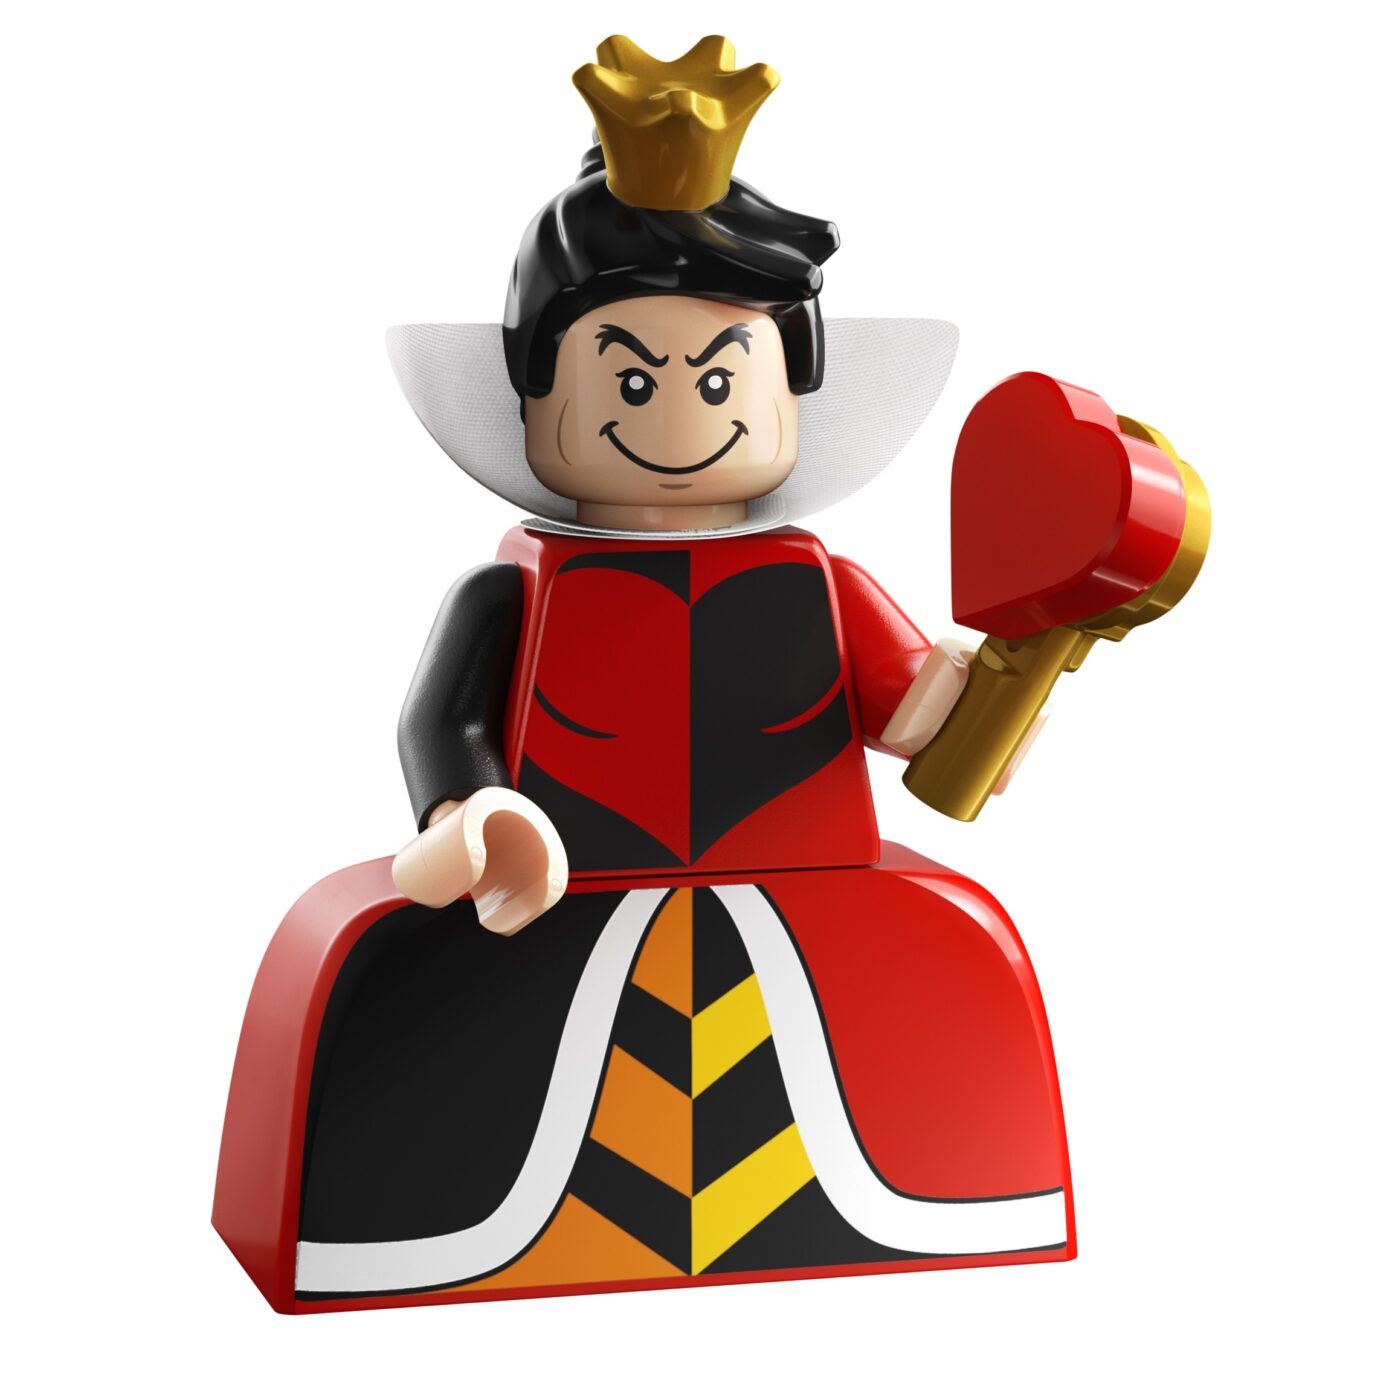 LEGO Disney 100 Minifigures Queen of Hearts